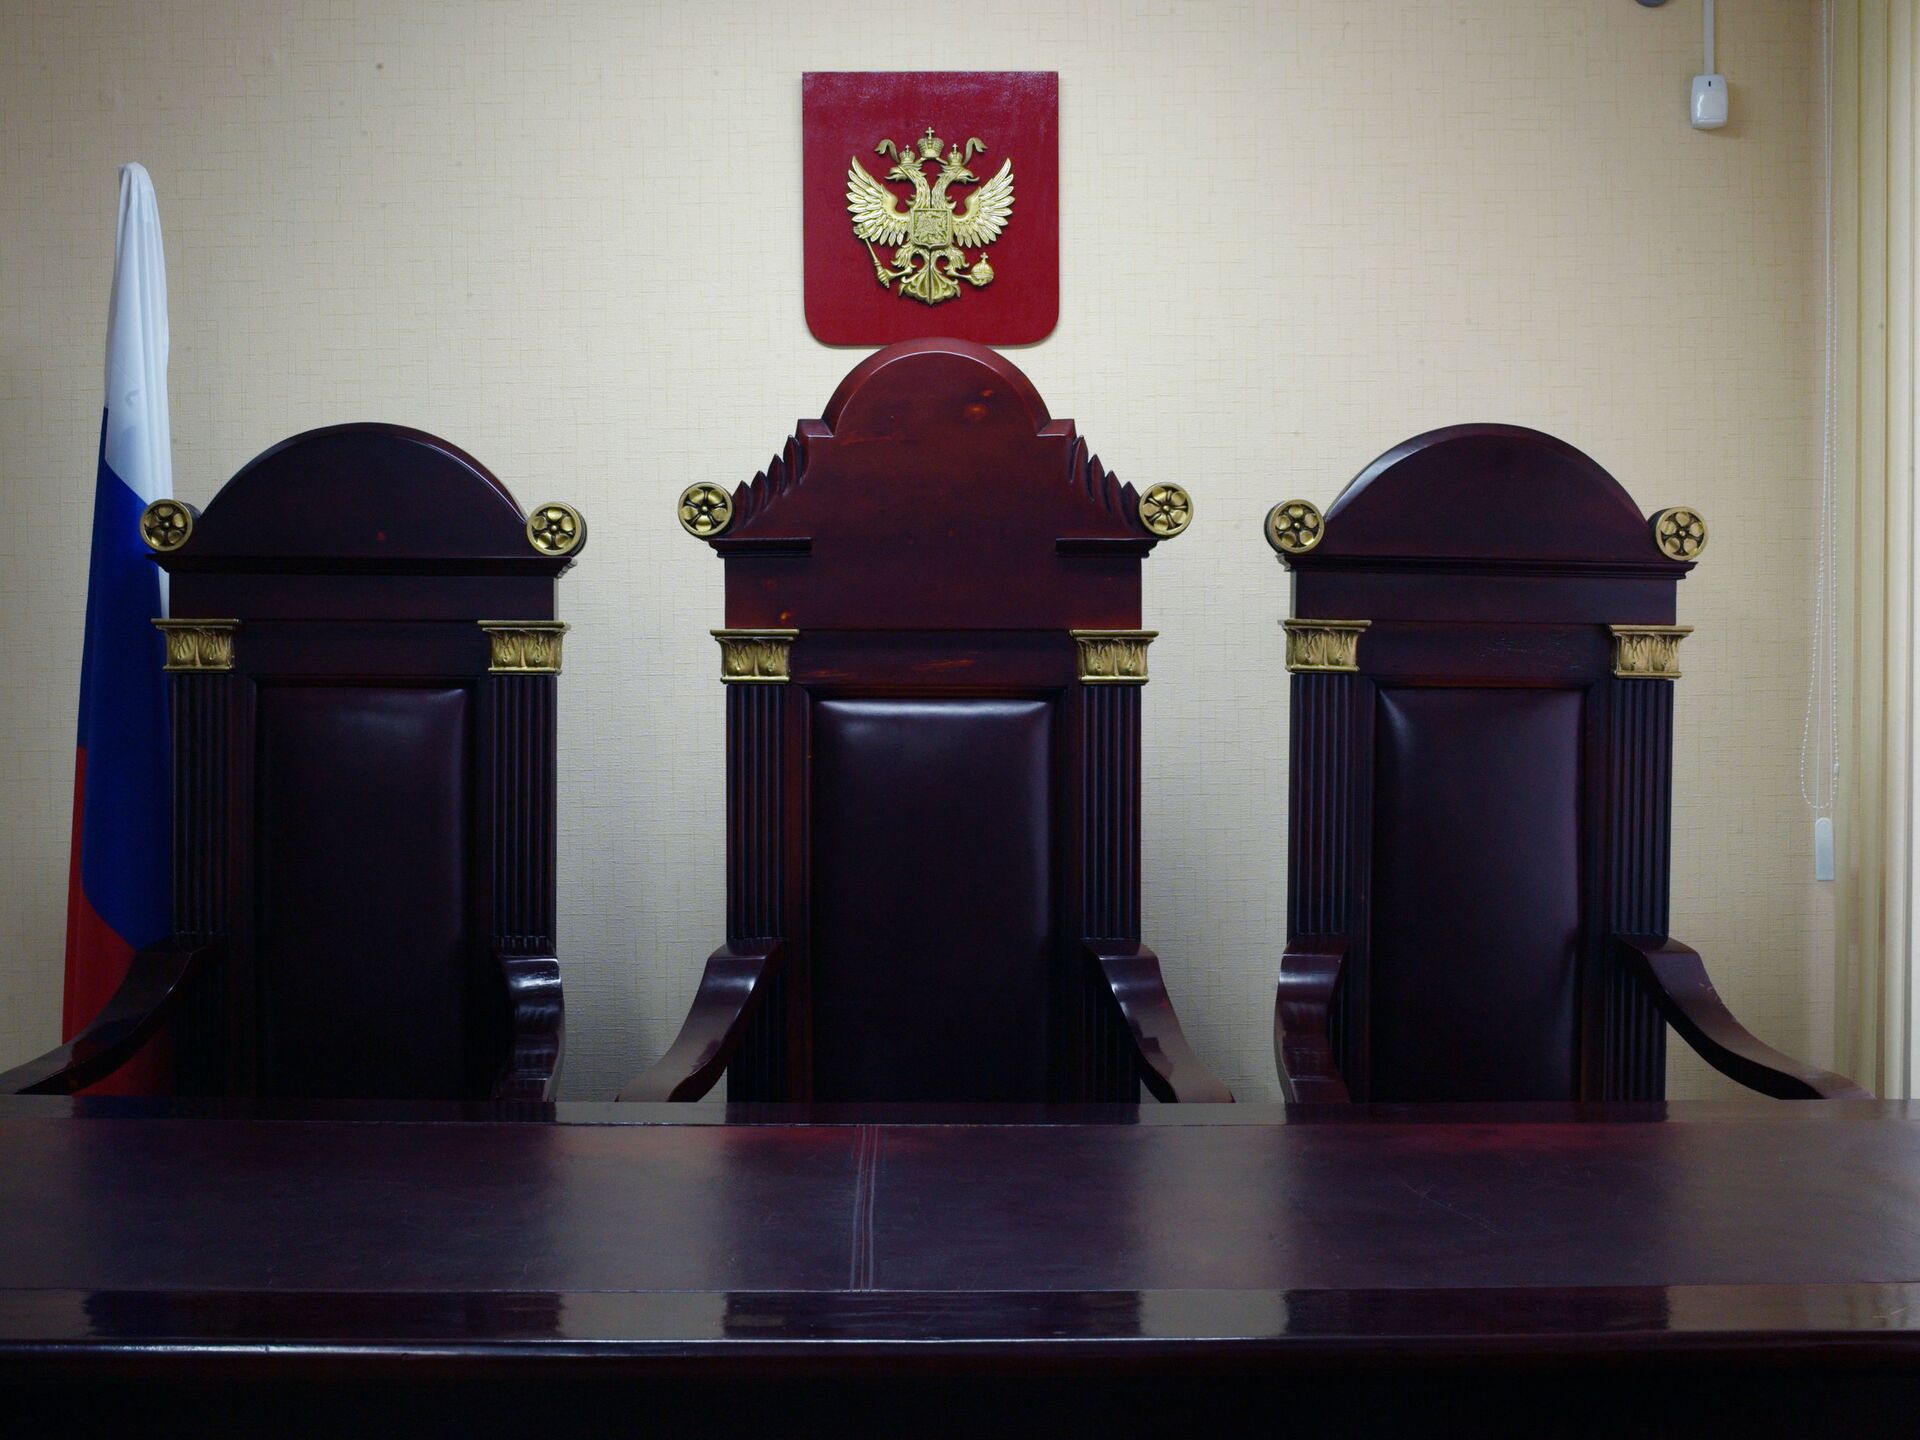 З суд. Судейское кресло. Кресла для залов судебных заседаний. Кресло судьи в зале суда. Судейское кресло суд.